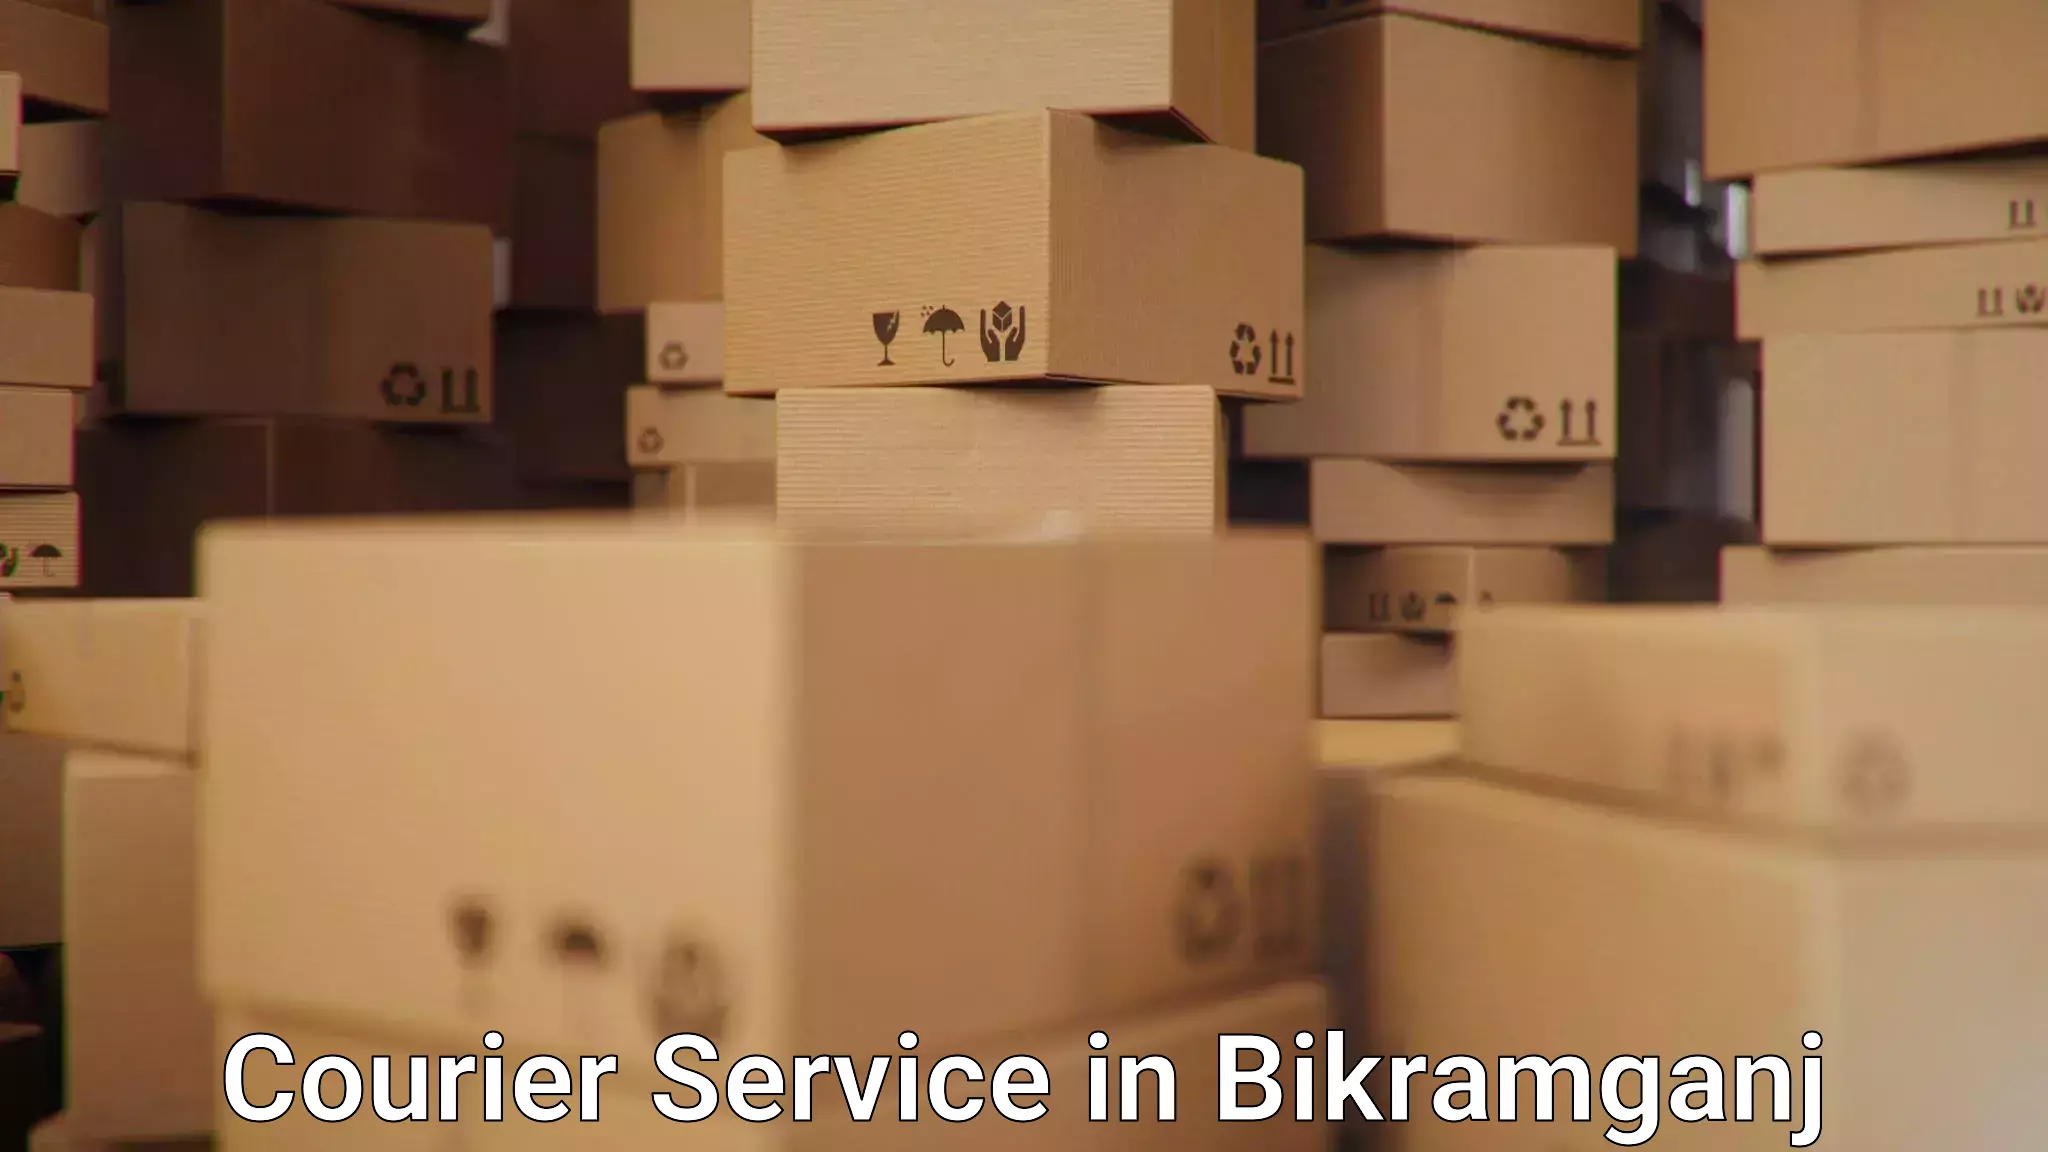 High value parcel delivery in Bikramganj